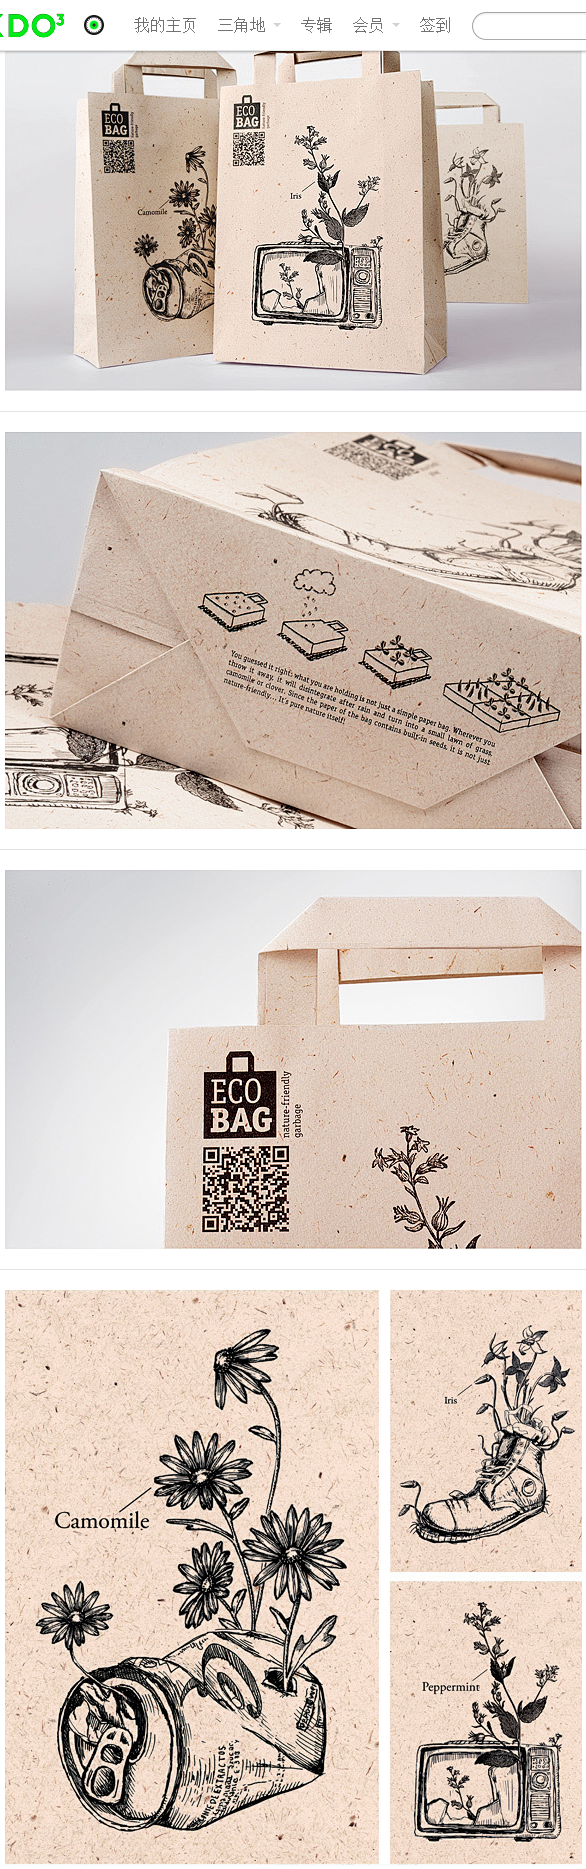 EcoBag 概念包装设计 设计圈 展示...